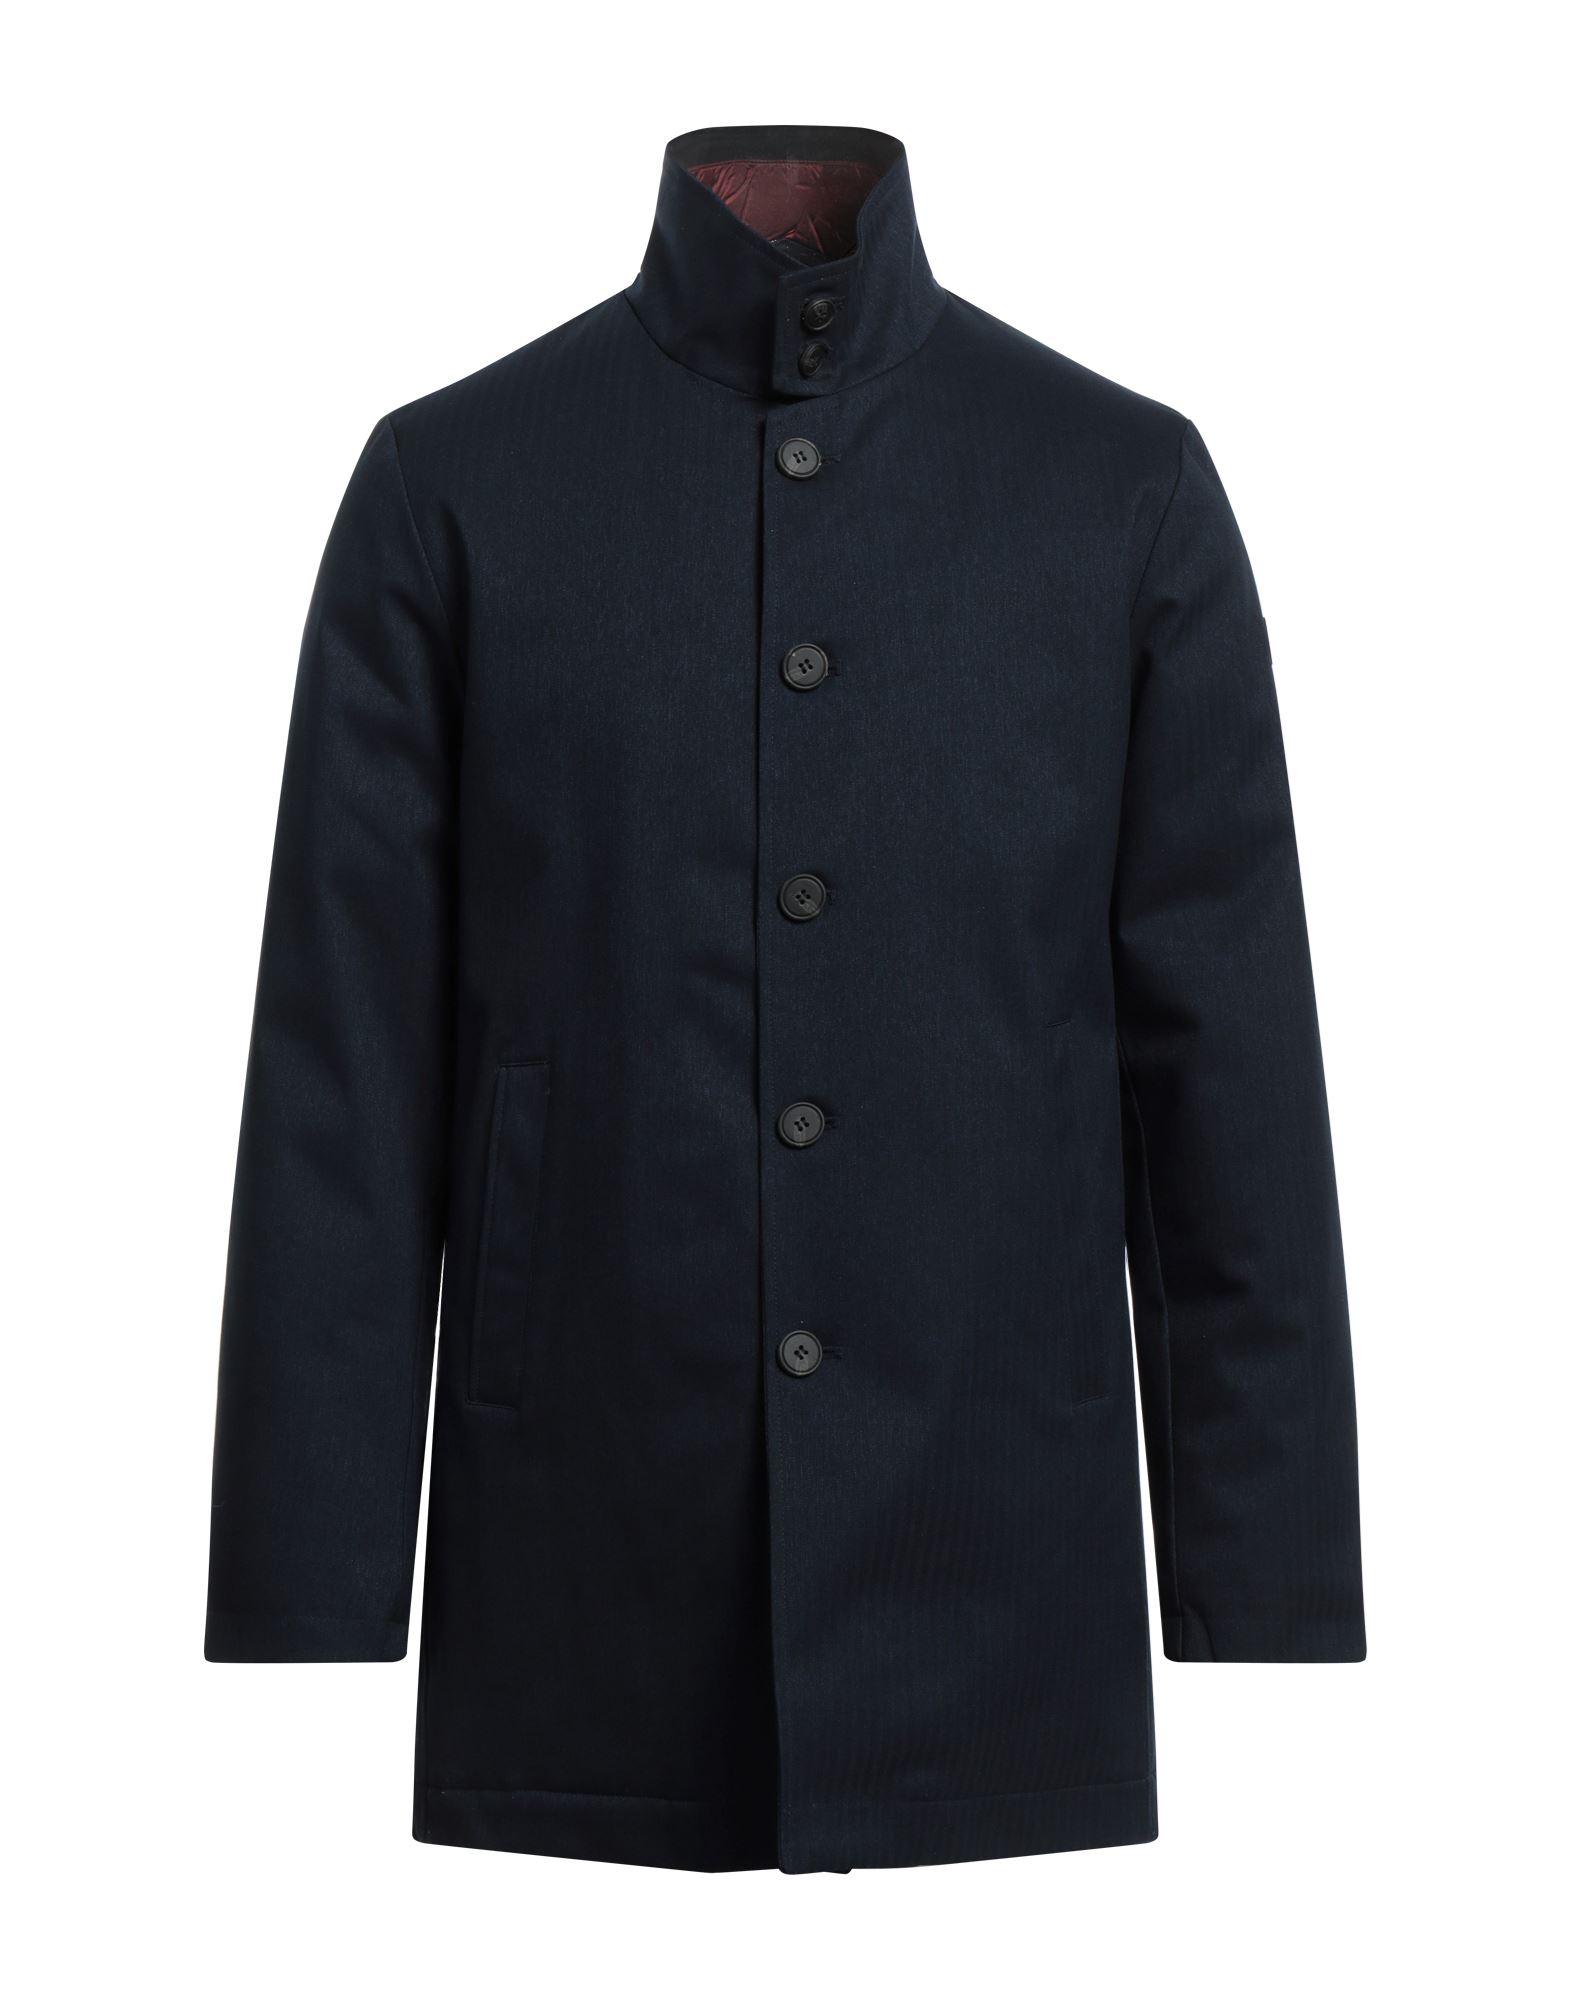 HOMEWARD CLOTHES Mantel Herren Marineblau von HOMEWARD CLOTHES